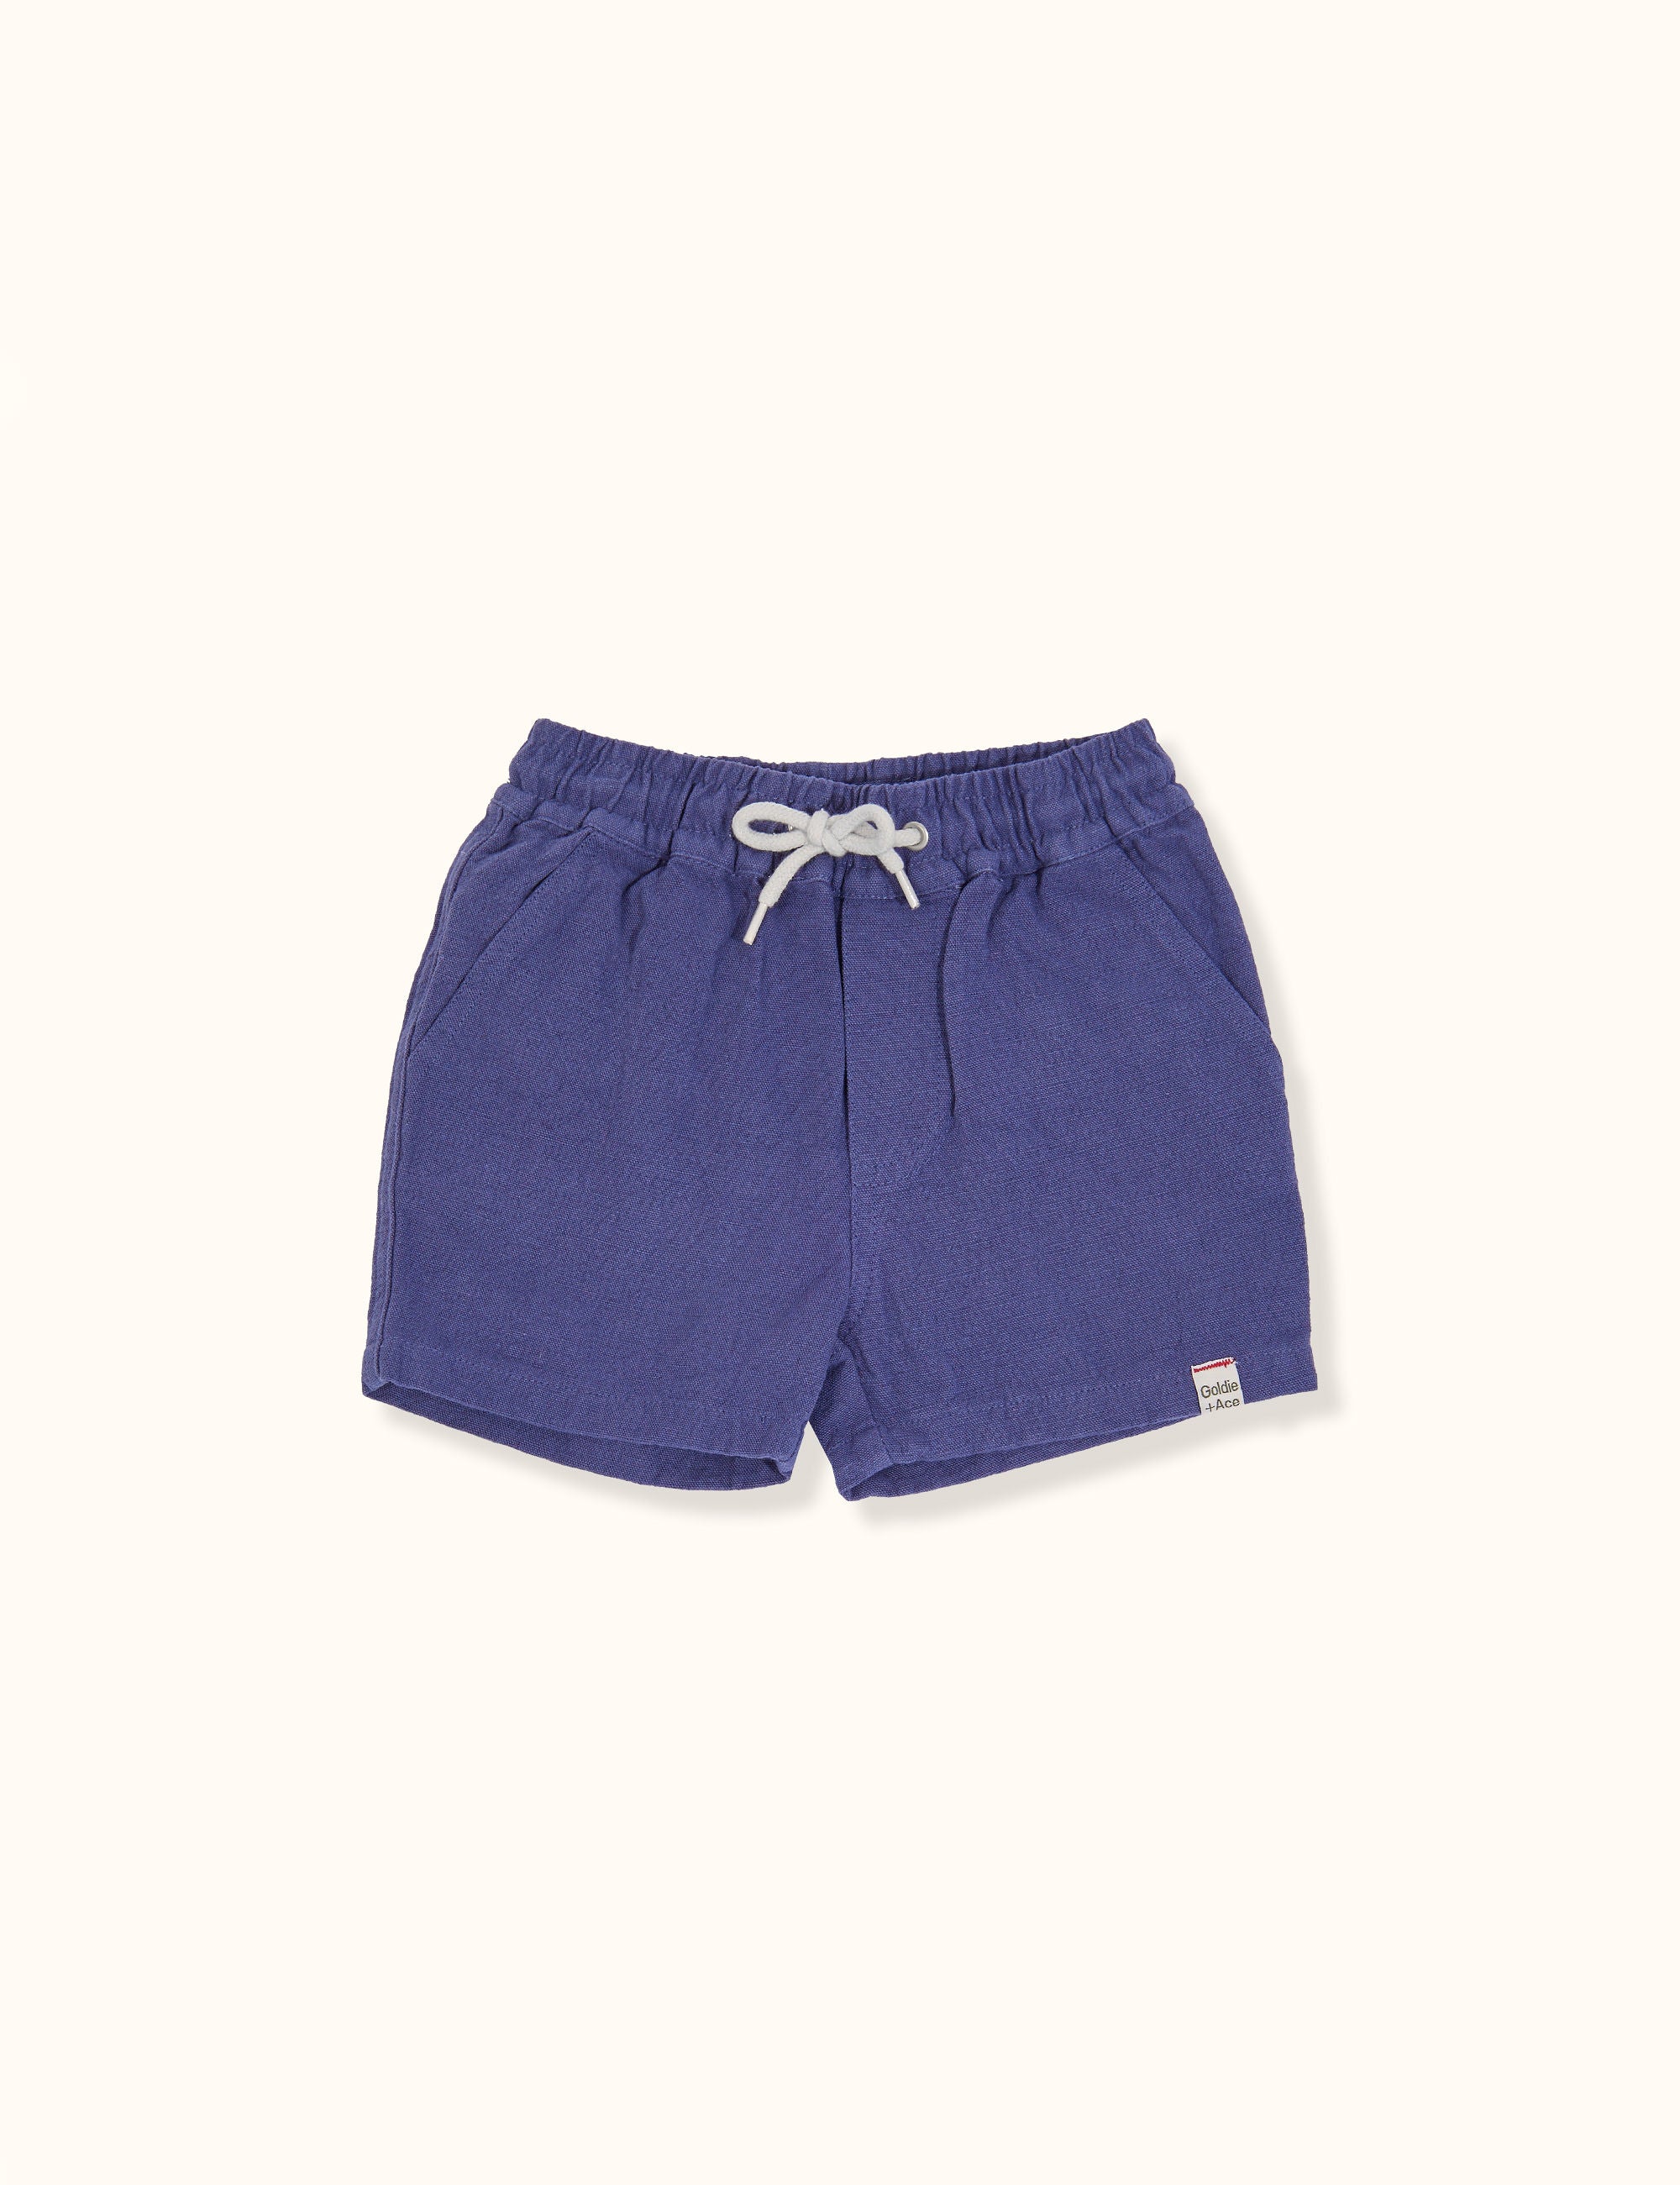 Goldie + Ace - Noah Linen Cotton Shorts (Blue)